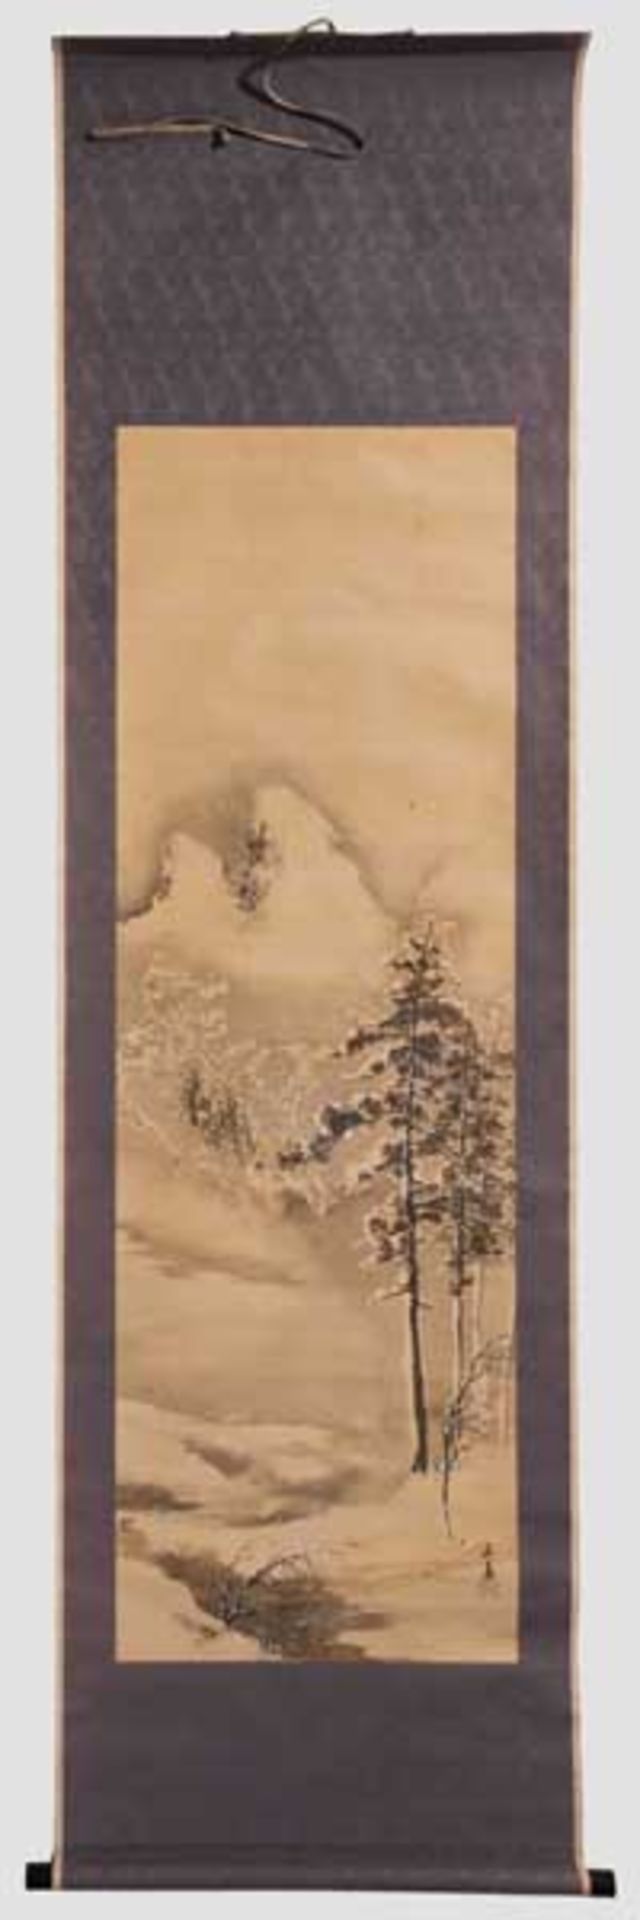 Kakemono (Rollbild), Japan, Taisho-Periode Monochrome Darstellung von Kiefern vor einer